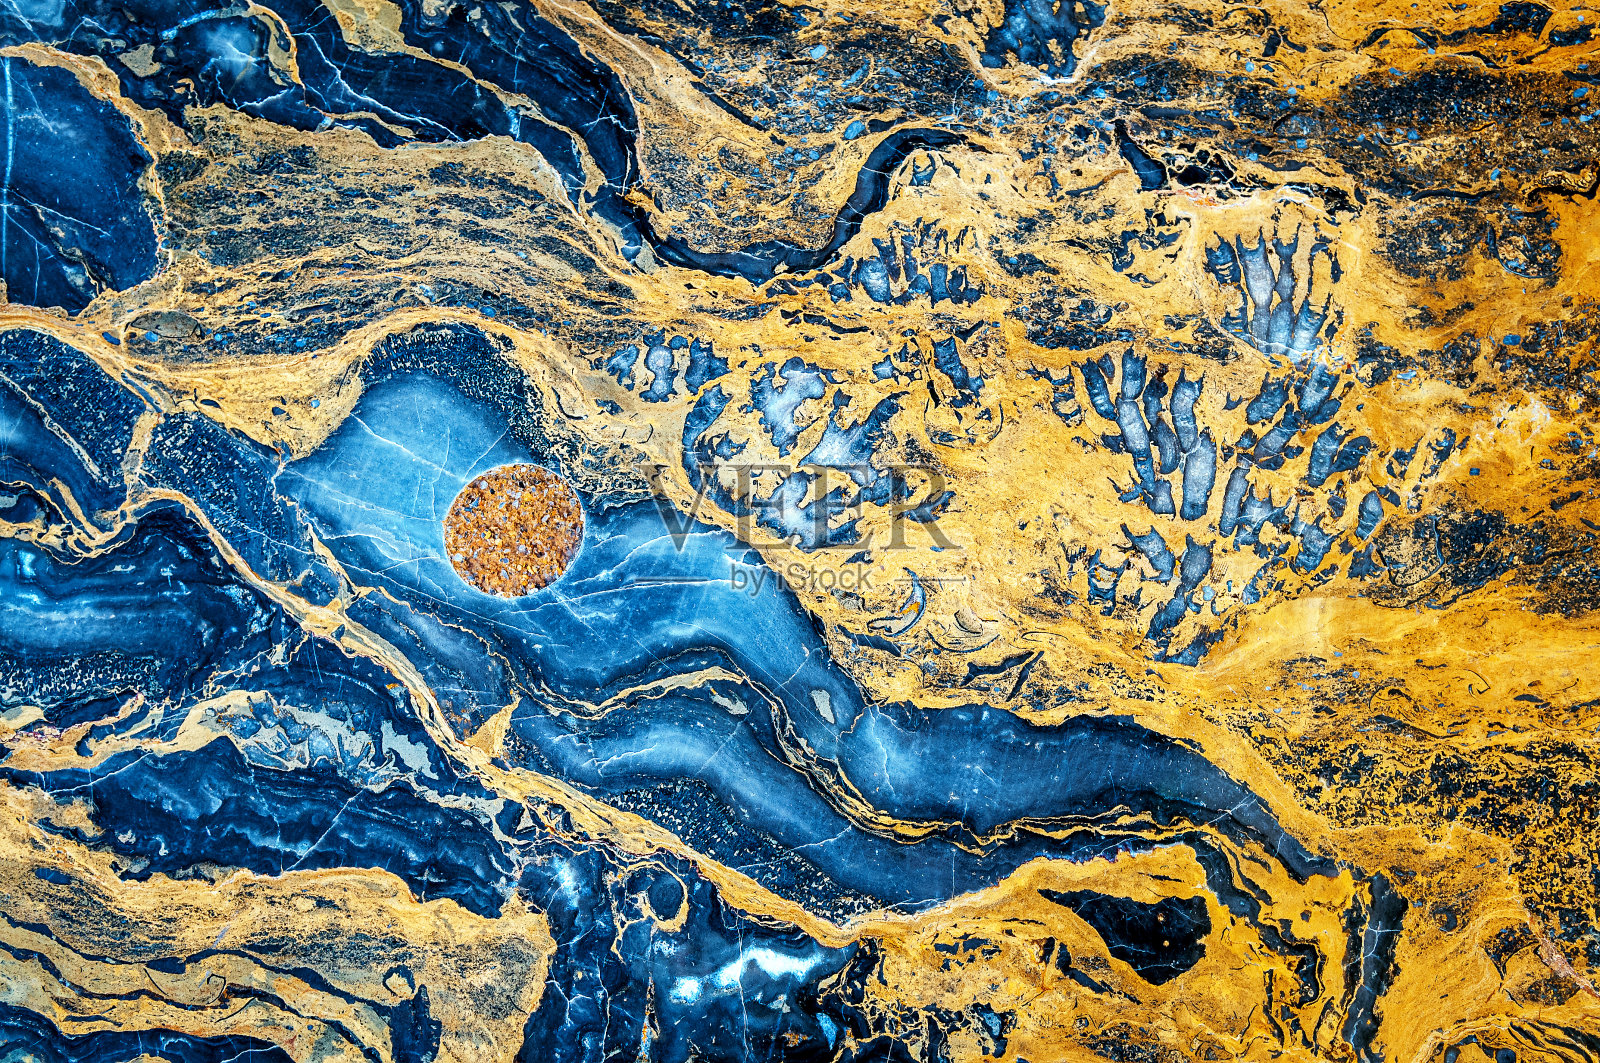 缟玛瑙大理石,蓝色,橙色,黄色,棕色,北京,中国照片摄影图片